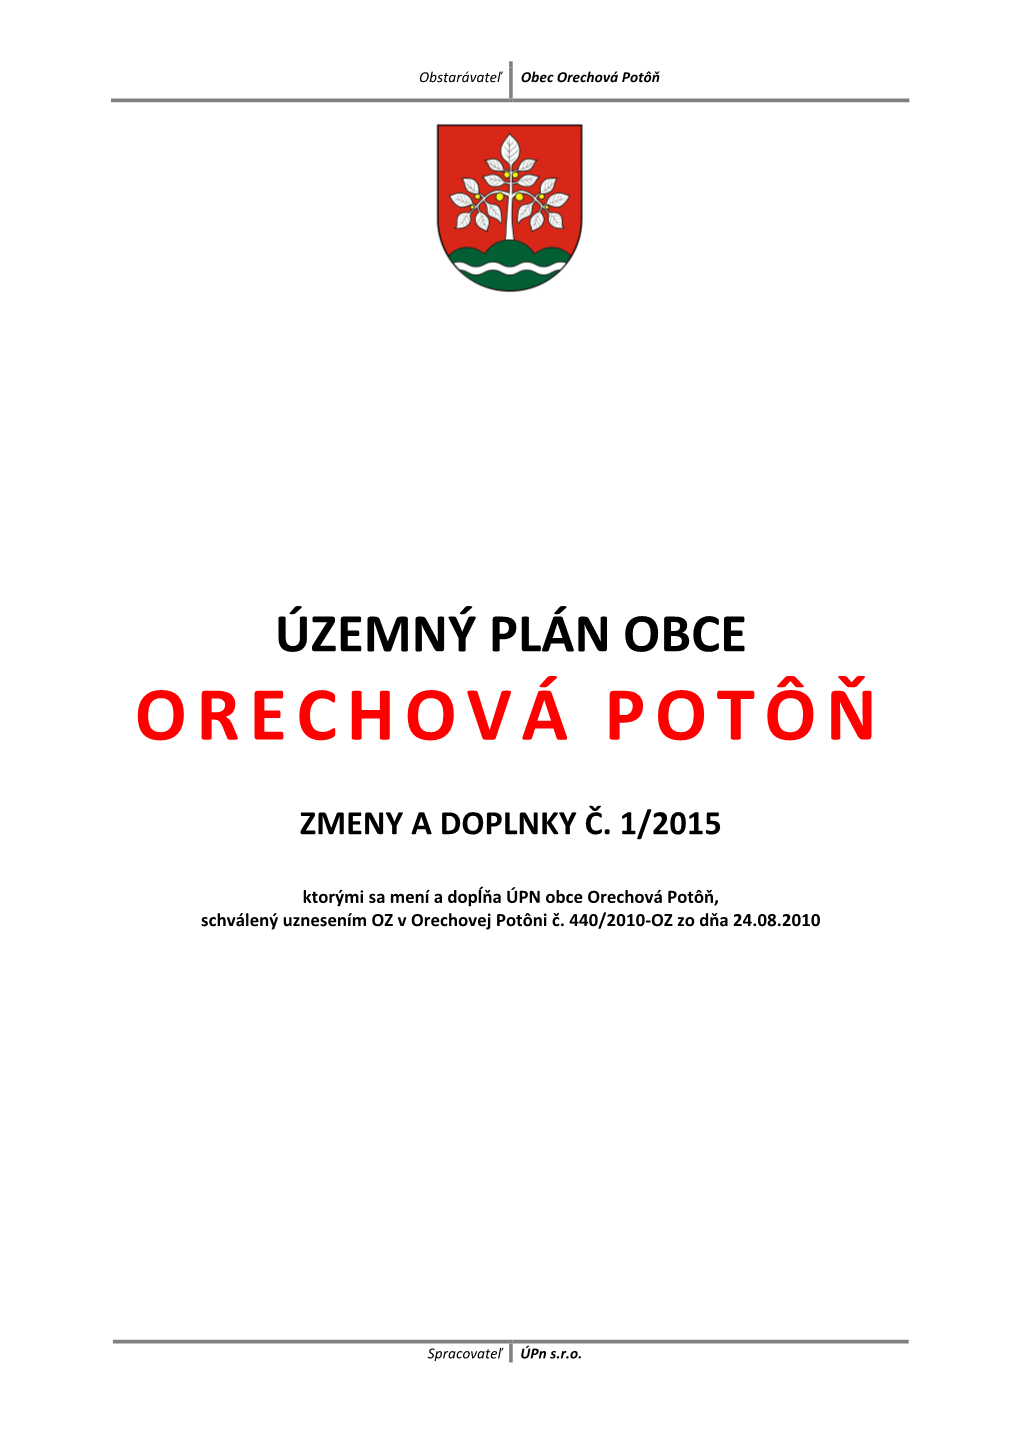 Text Orechova Poton Zad12015